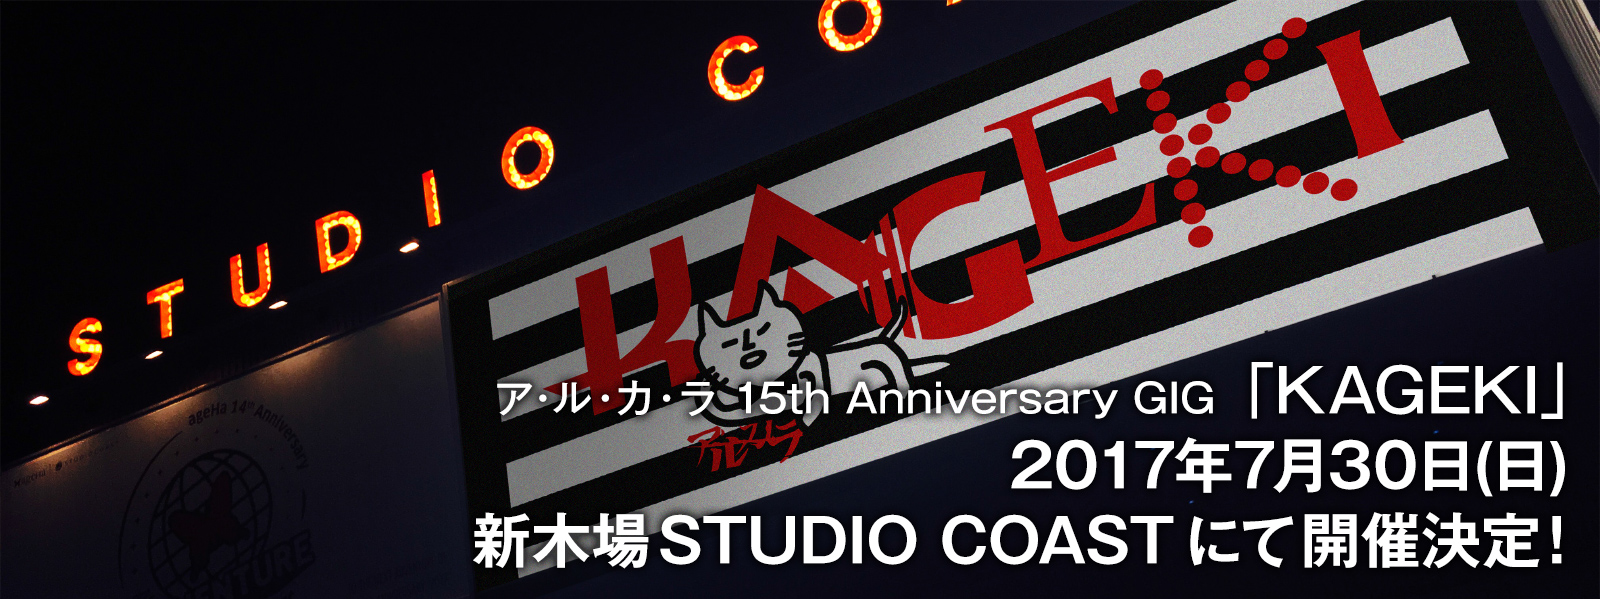 ア・ル・カ・ラ 15th Anniversary GIG 「KAGEKI」2017年7月30日(日) 新木場STUDIO COAST にて開催決定!